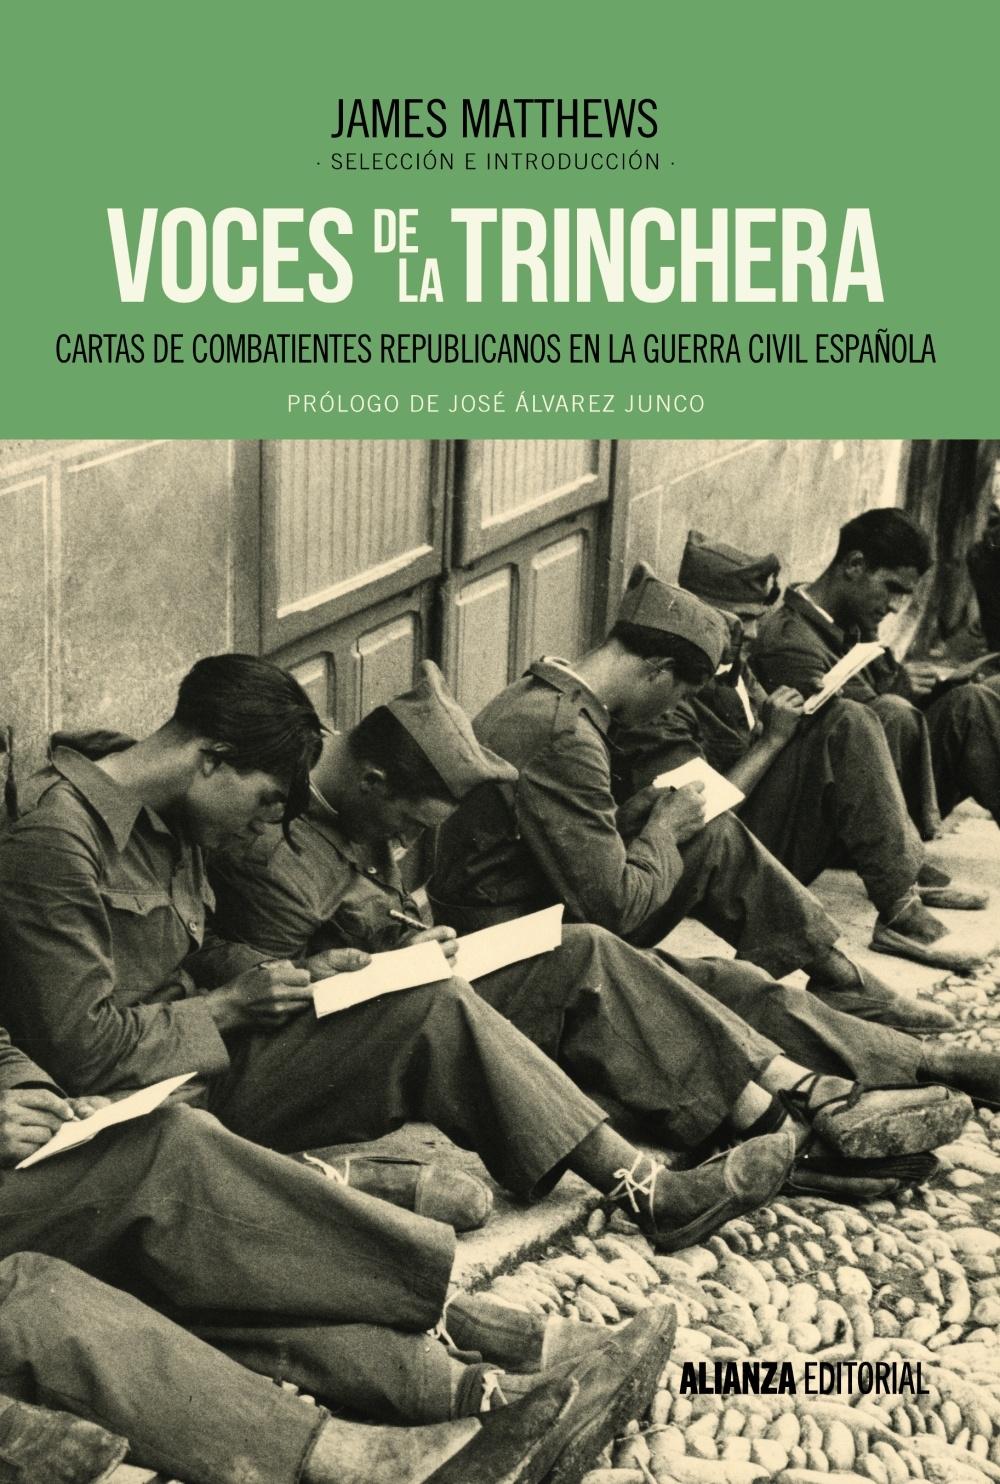 Voces de la trinchera "Cartas de combatientes republicanos en la Guerra Civil española"